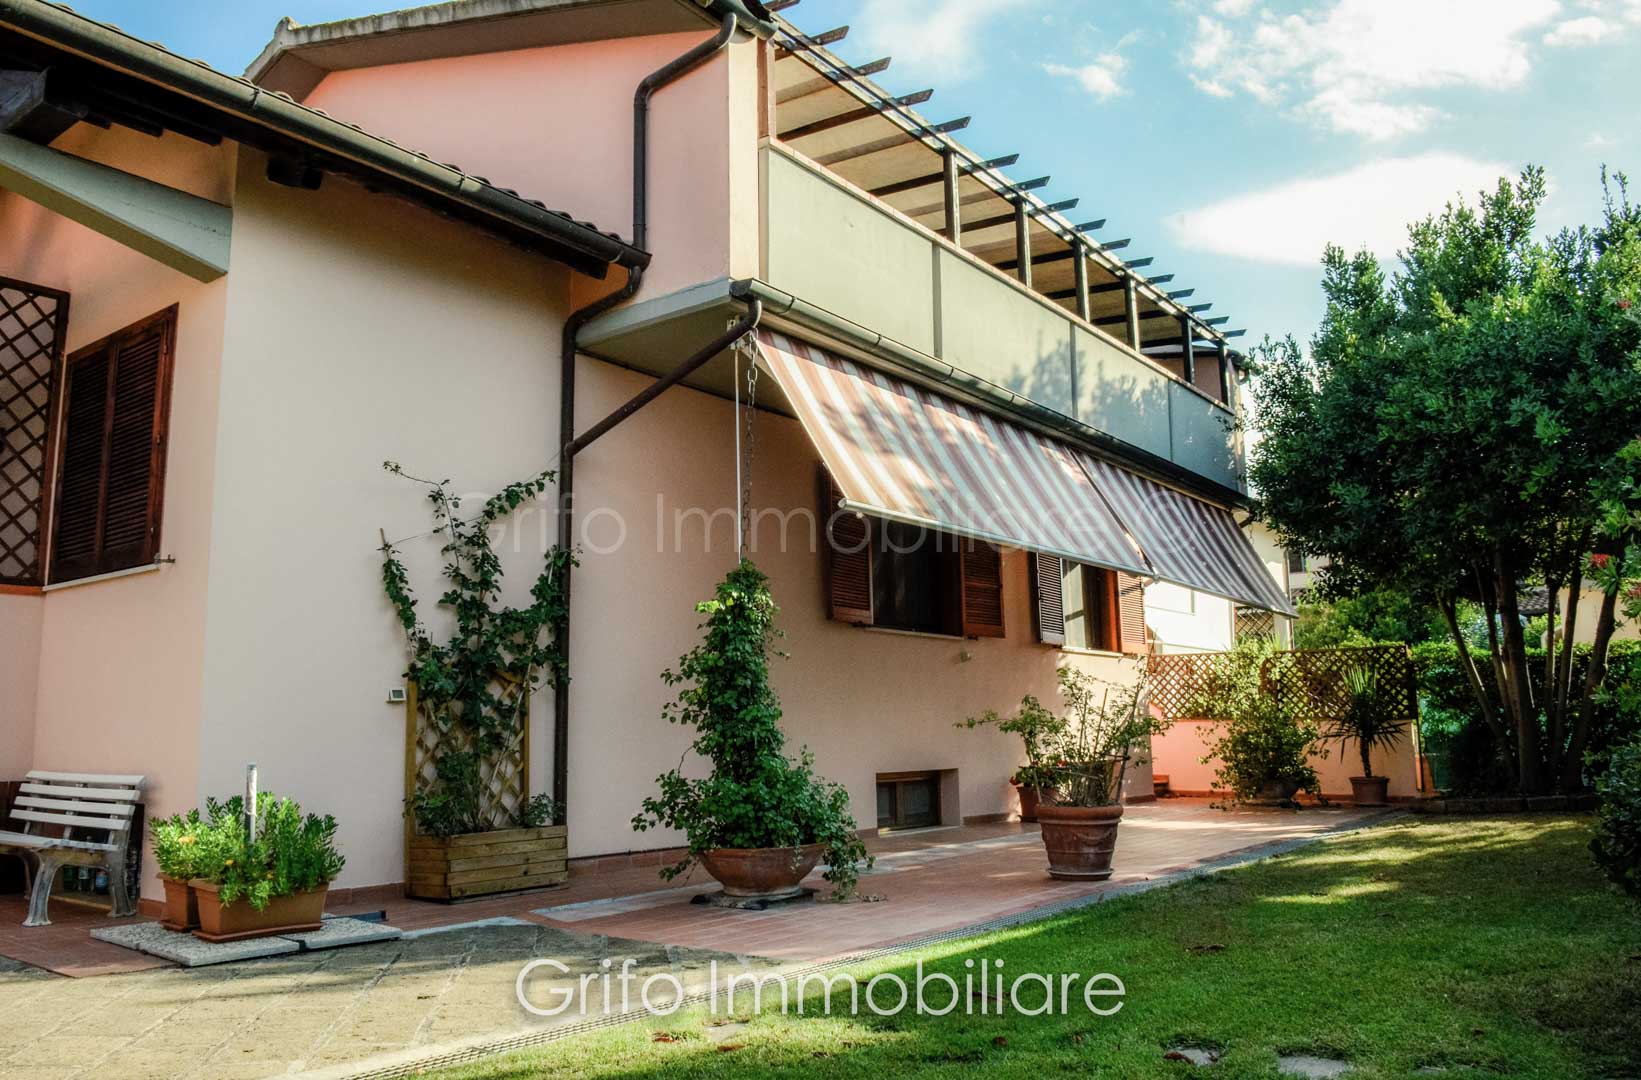 Villa bifamiliare in ottime condizioni a Rispescia in provincia di Grosseto